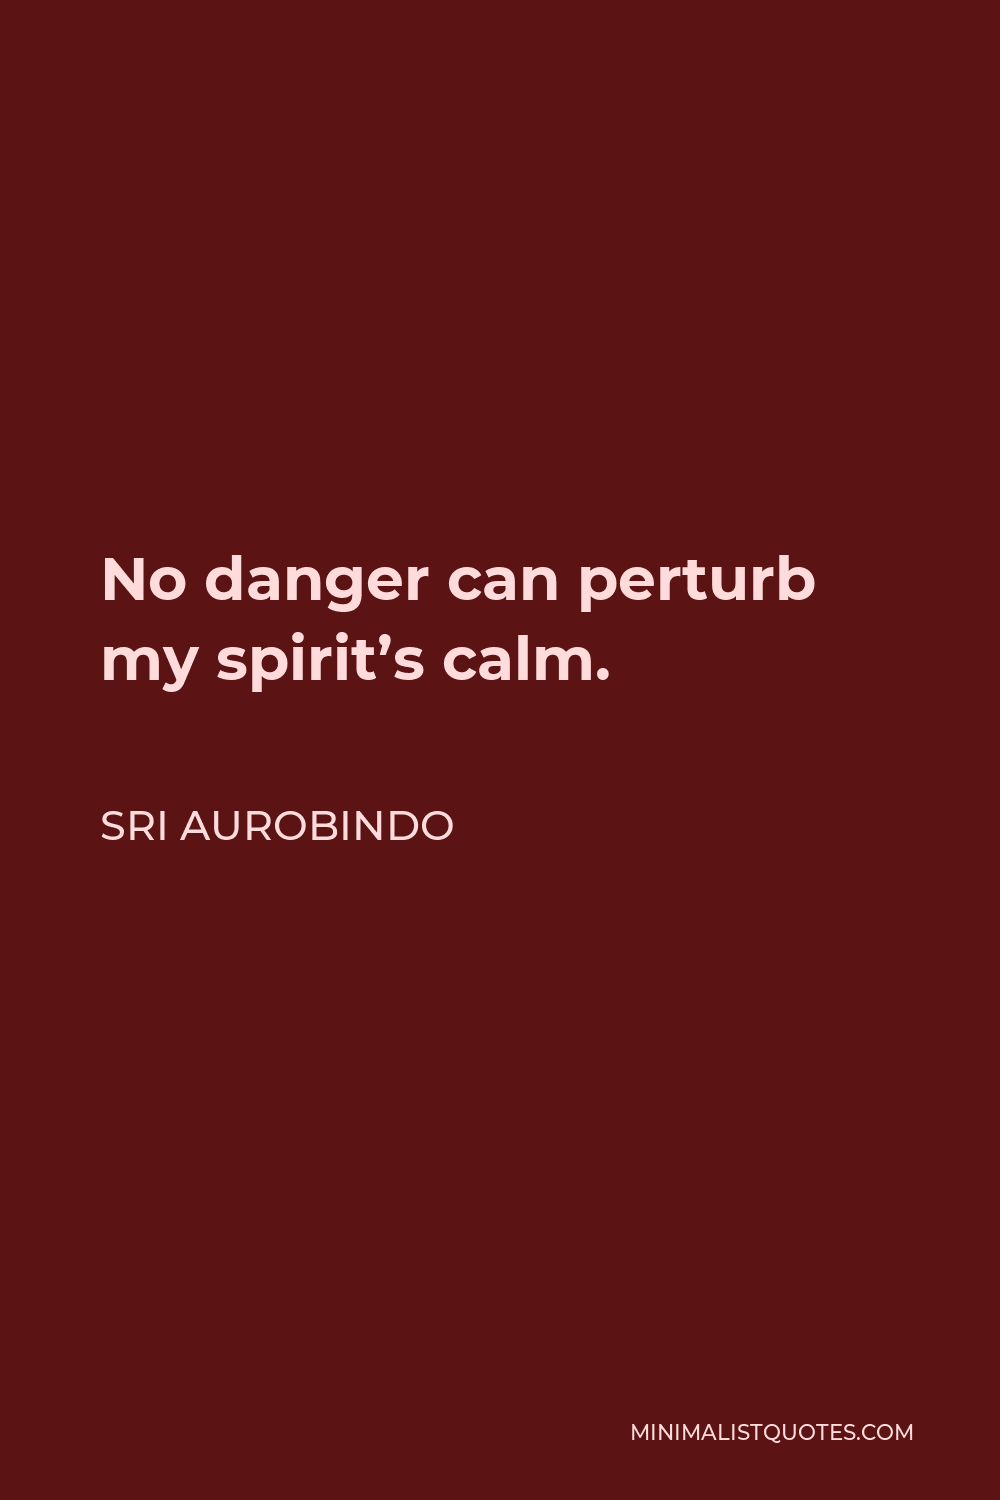 Sri Aurobindo Quote - No danger can perturb my spirit’s calm.